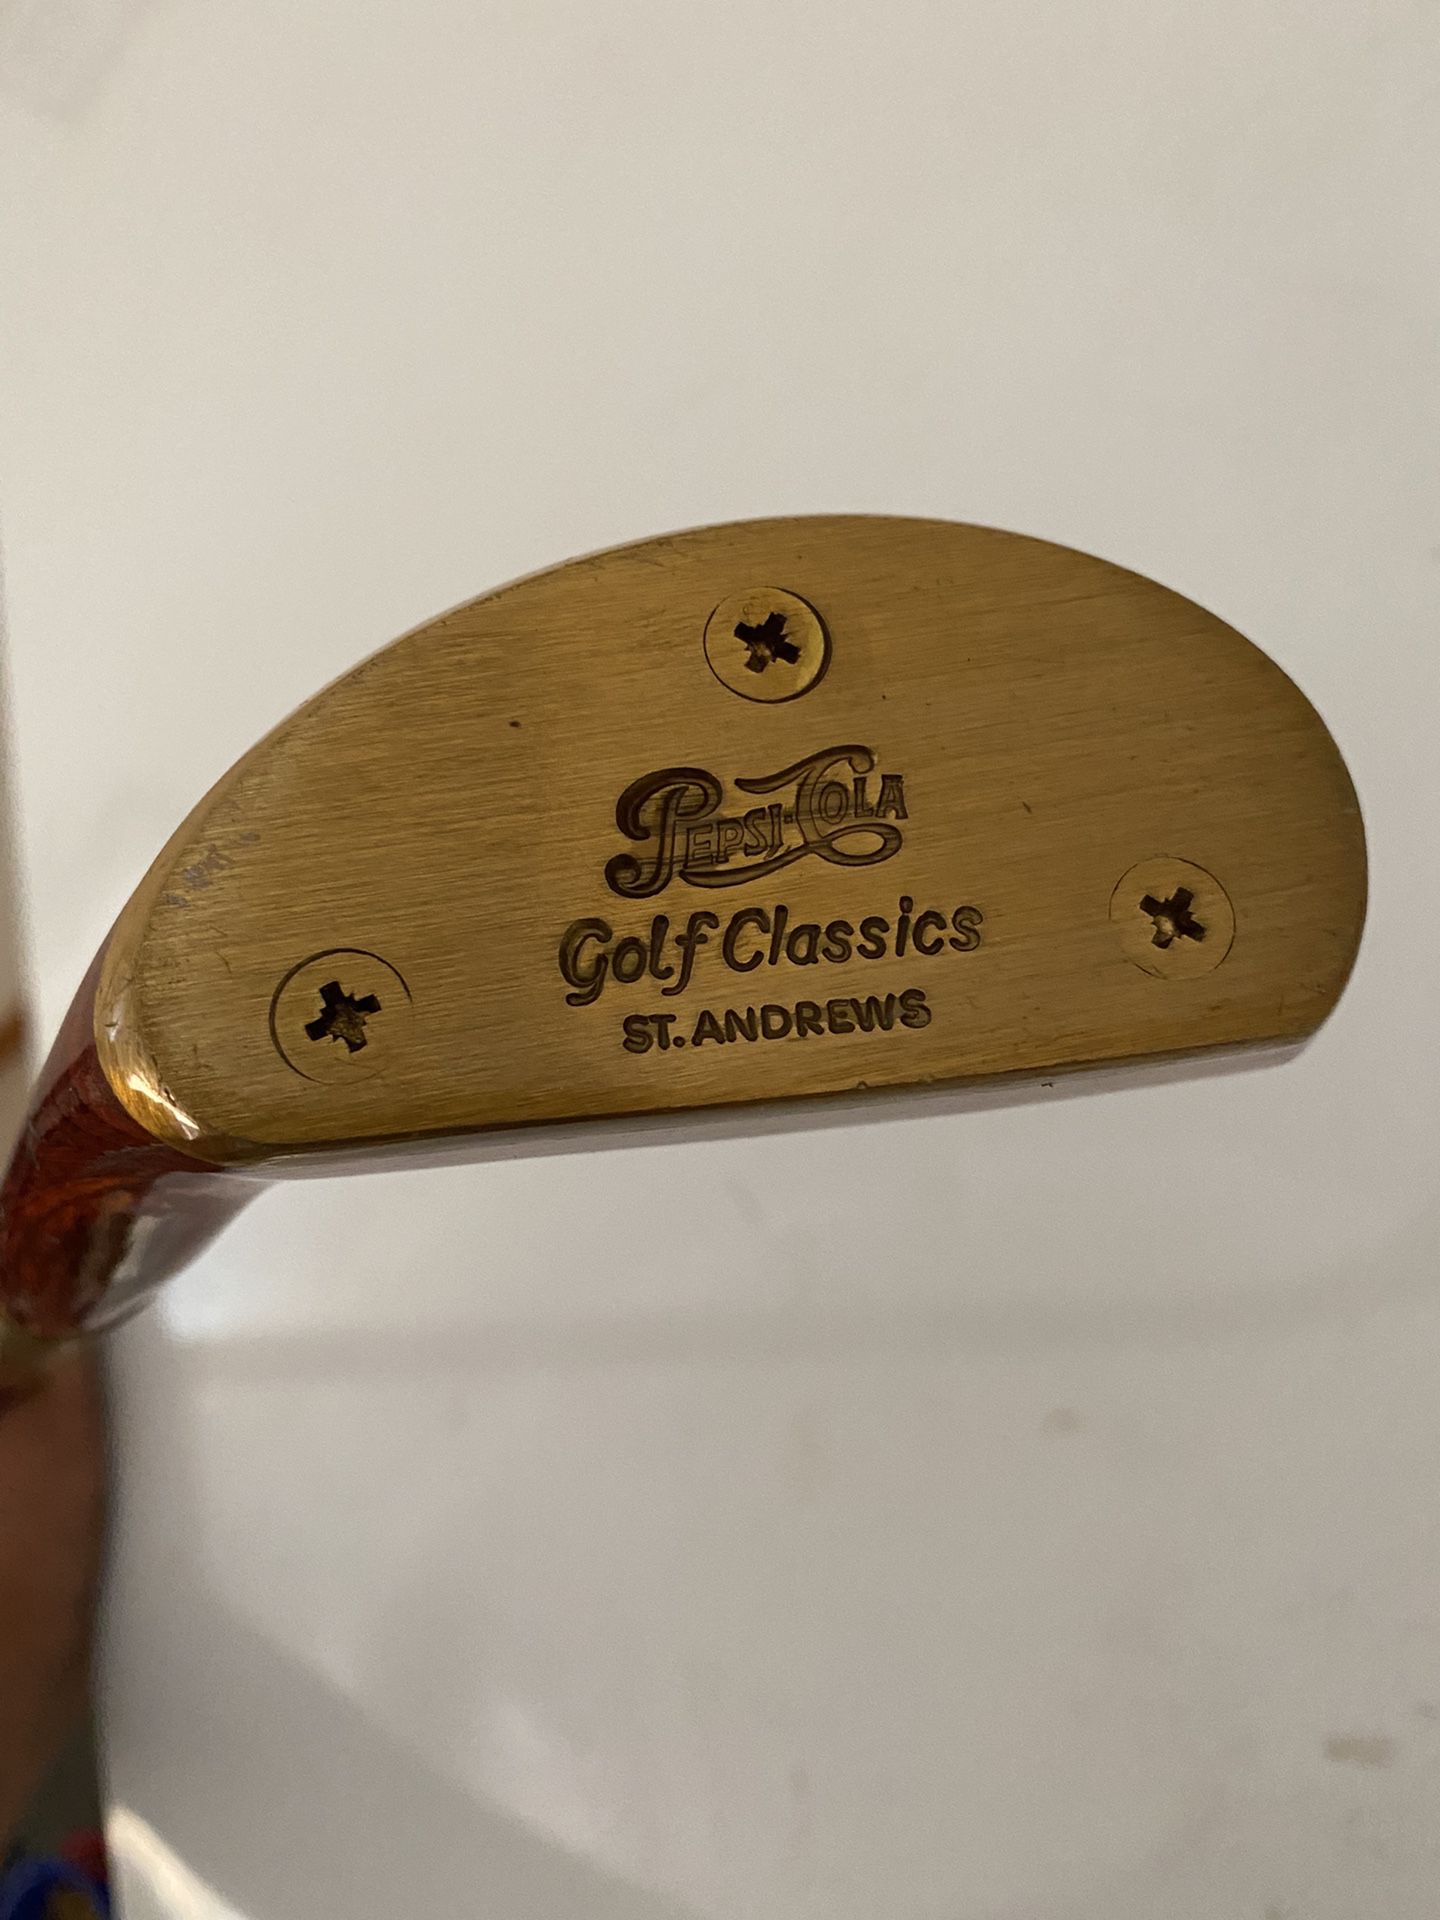 Golf Classics St. Andrew’s Pepsi-Cola Putter